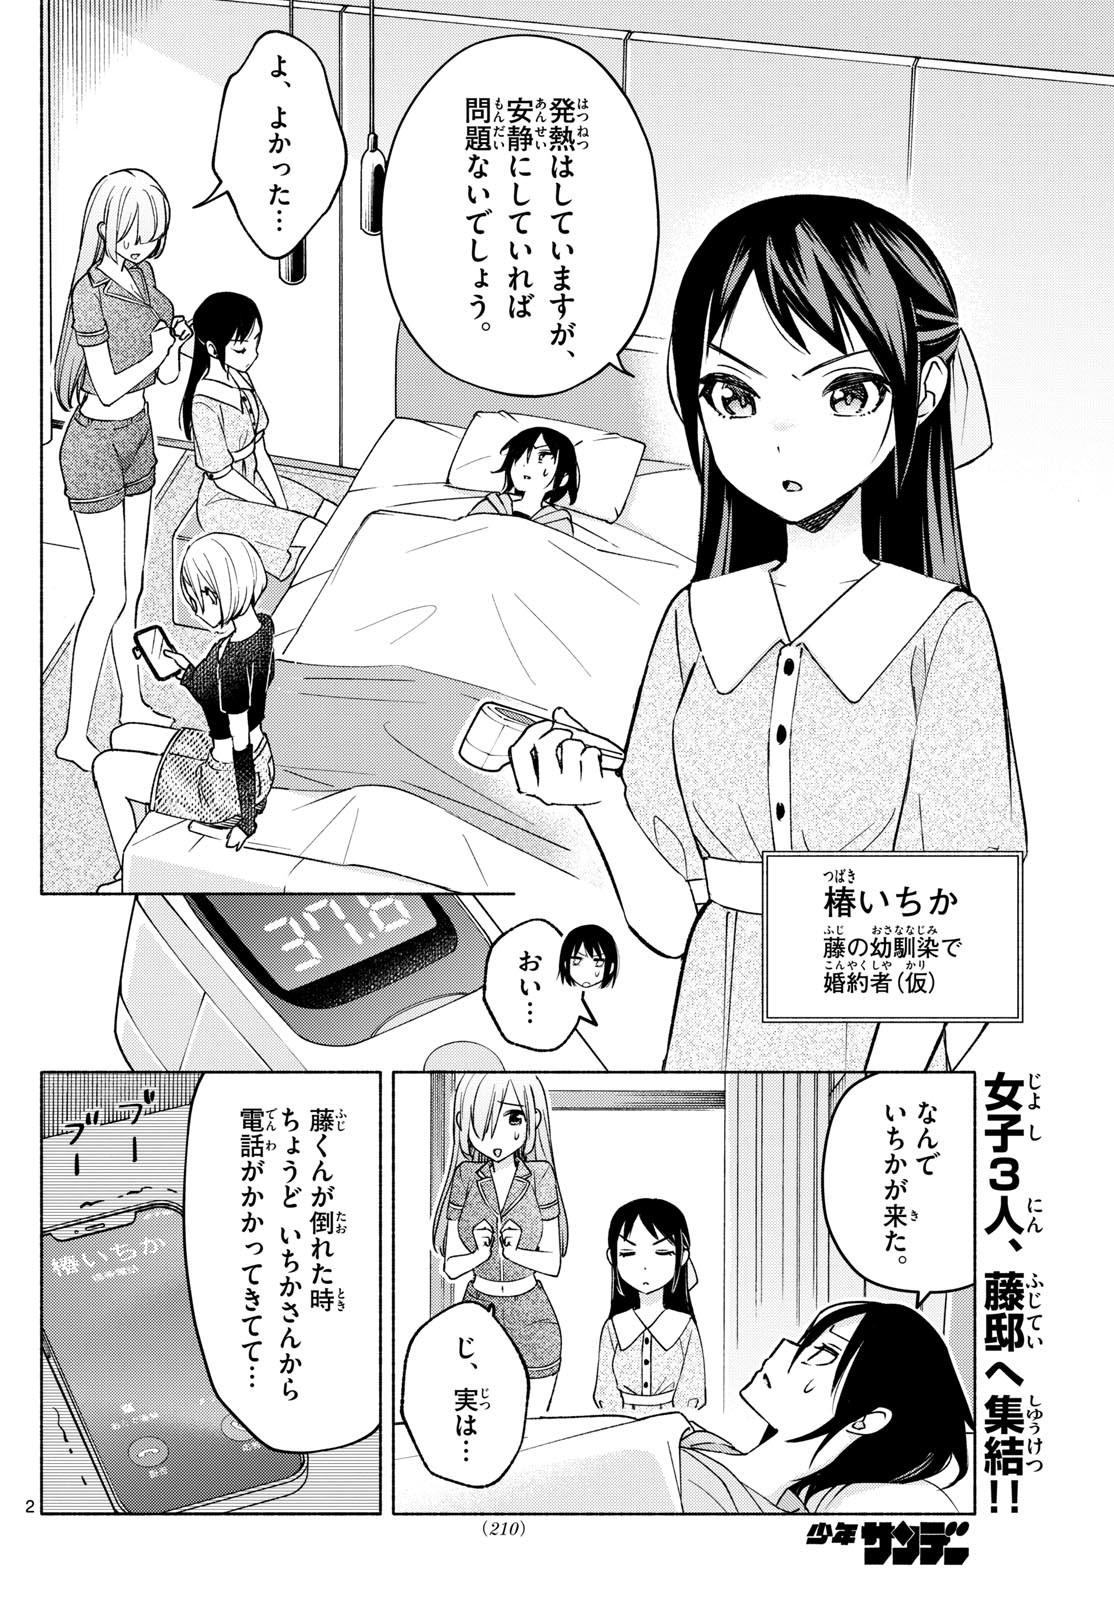 Kimi to Warui Koto ga Shitai - Chapter 030 - Page 2